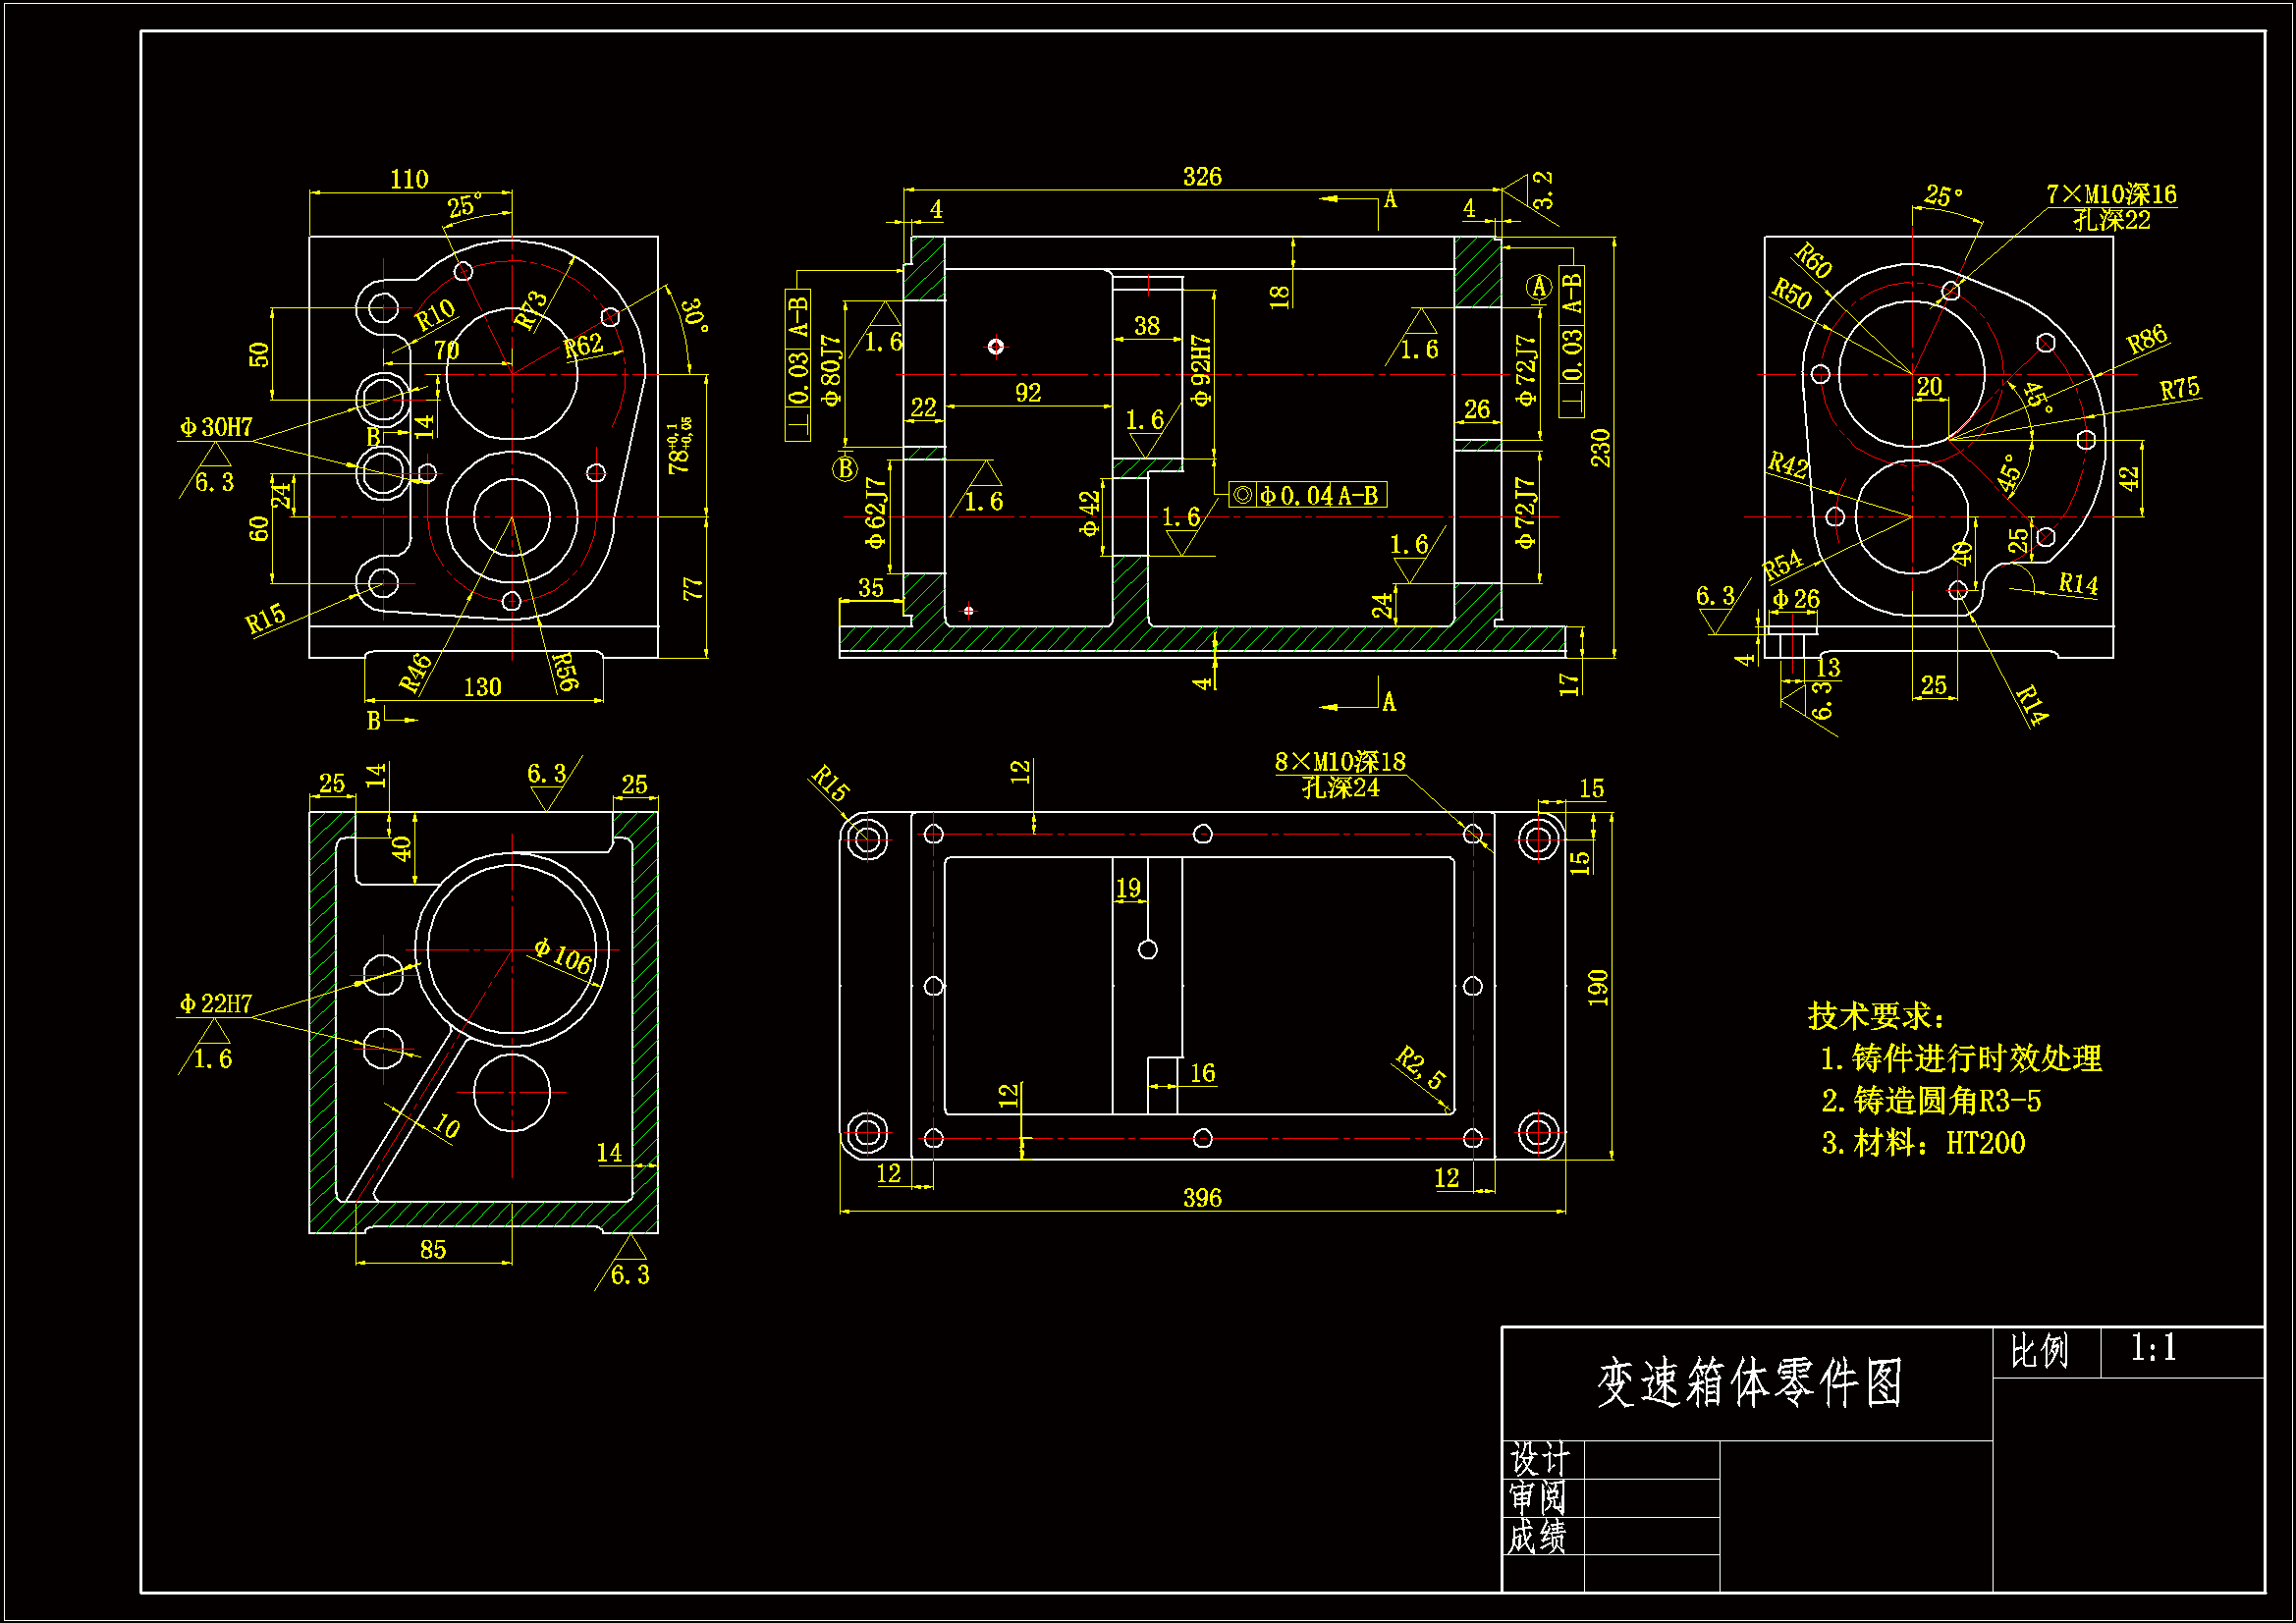 1989--变速箱体镗夹具设计机械加工工艺规程及夹具设计.zip